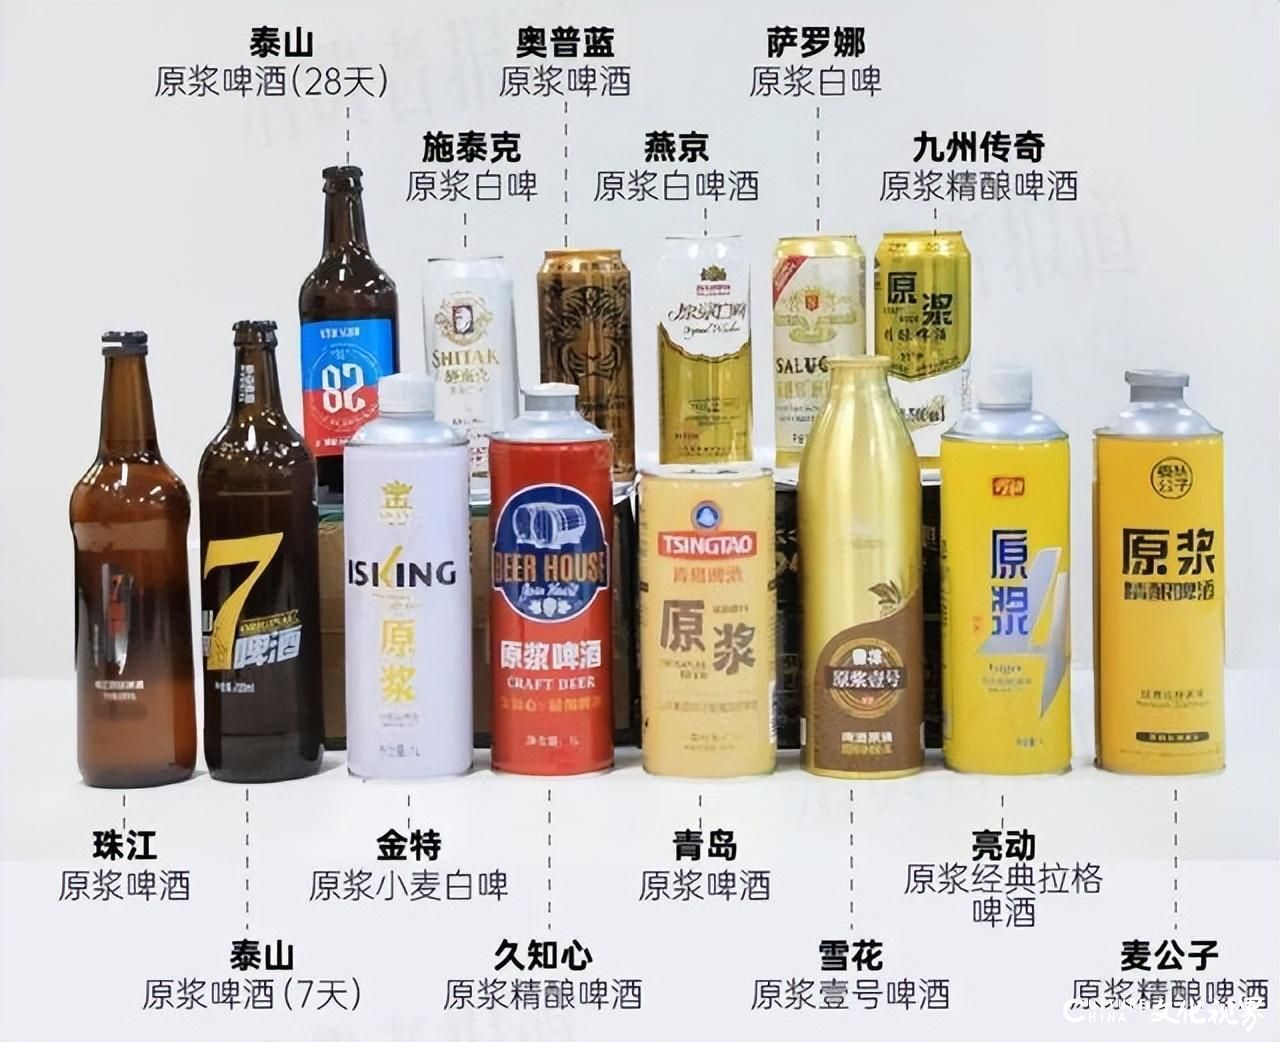 天天3·15丨媒体测试14款原浆啤酒，泰山原浆（28天）未检出酵母 涉嫌虚假宣传